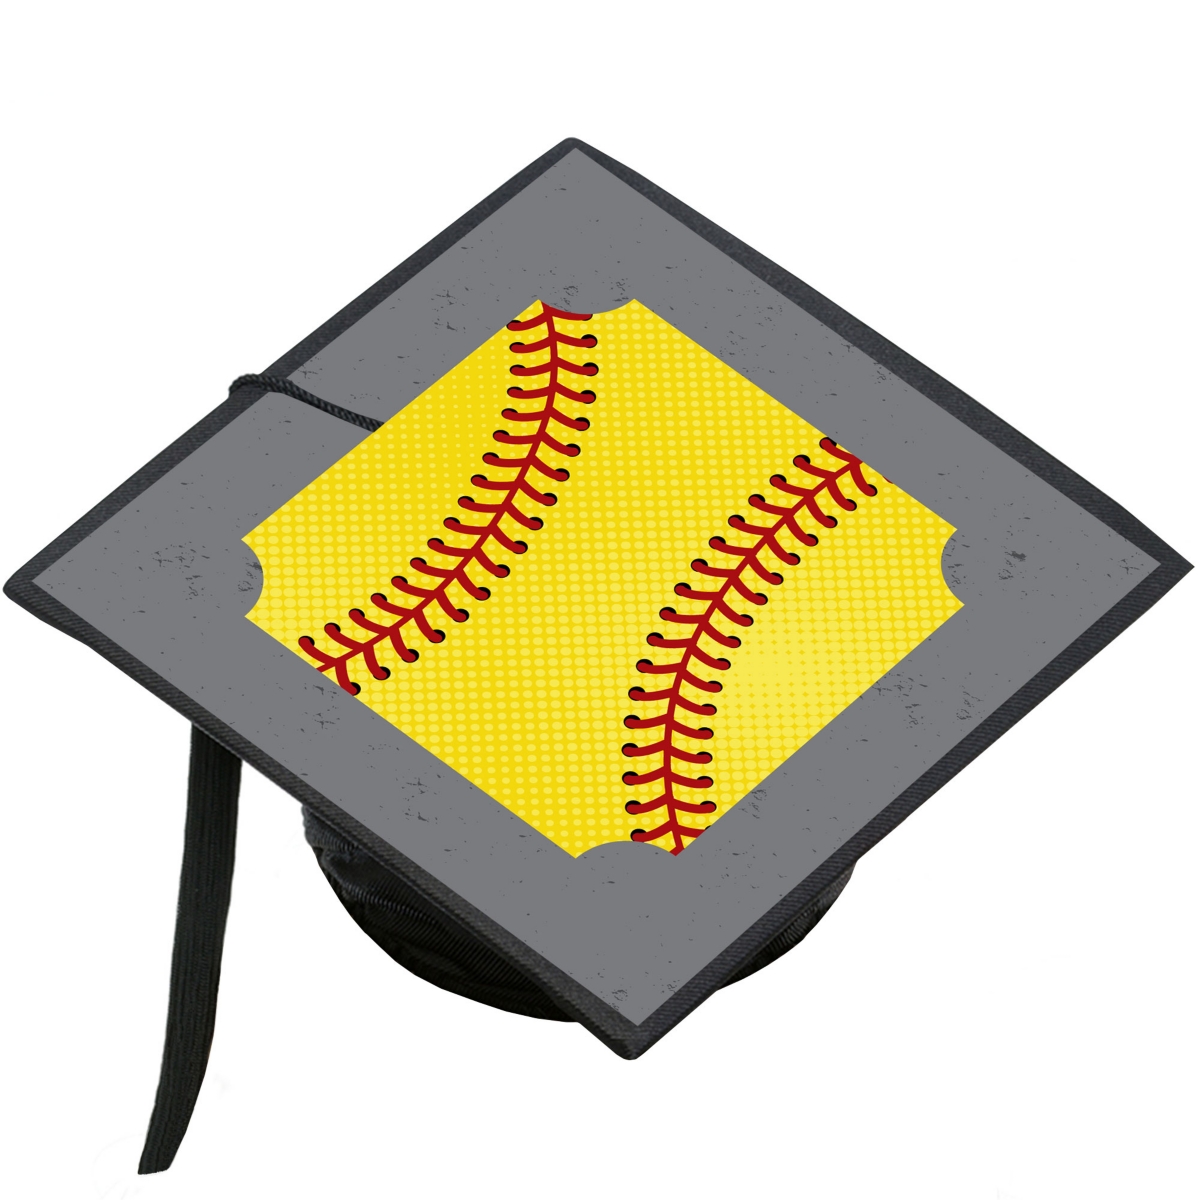 Grad Softball - Graduation Party Cap Decorations Kit - Grad Cap Cover